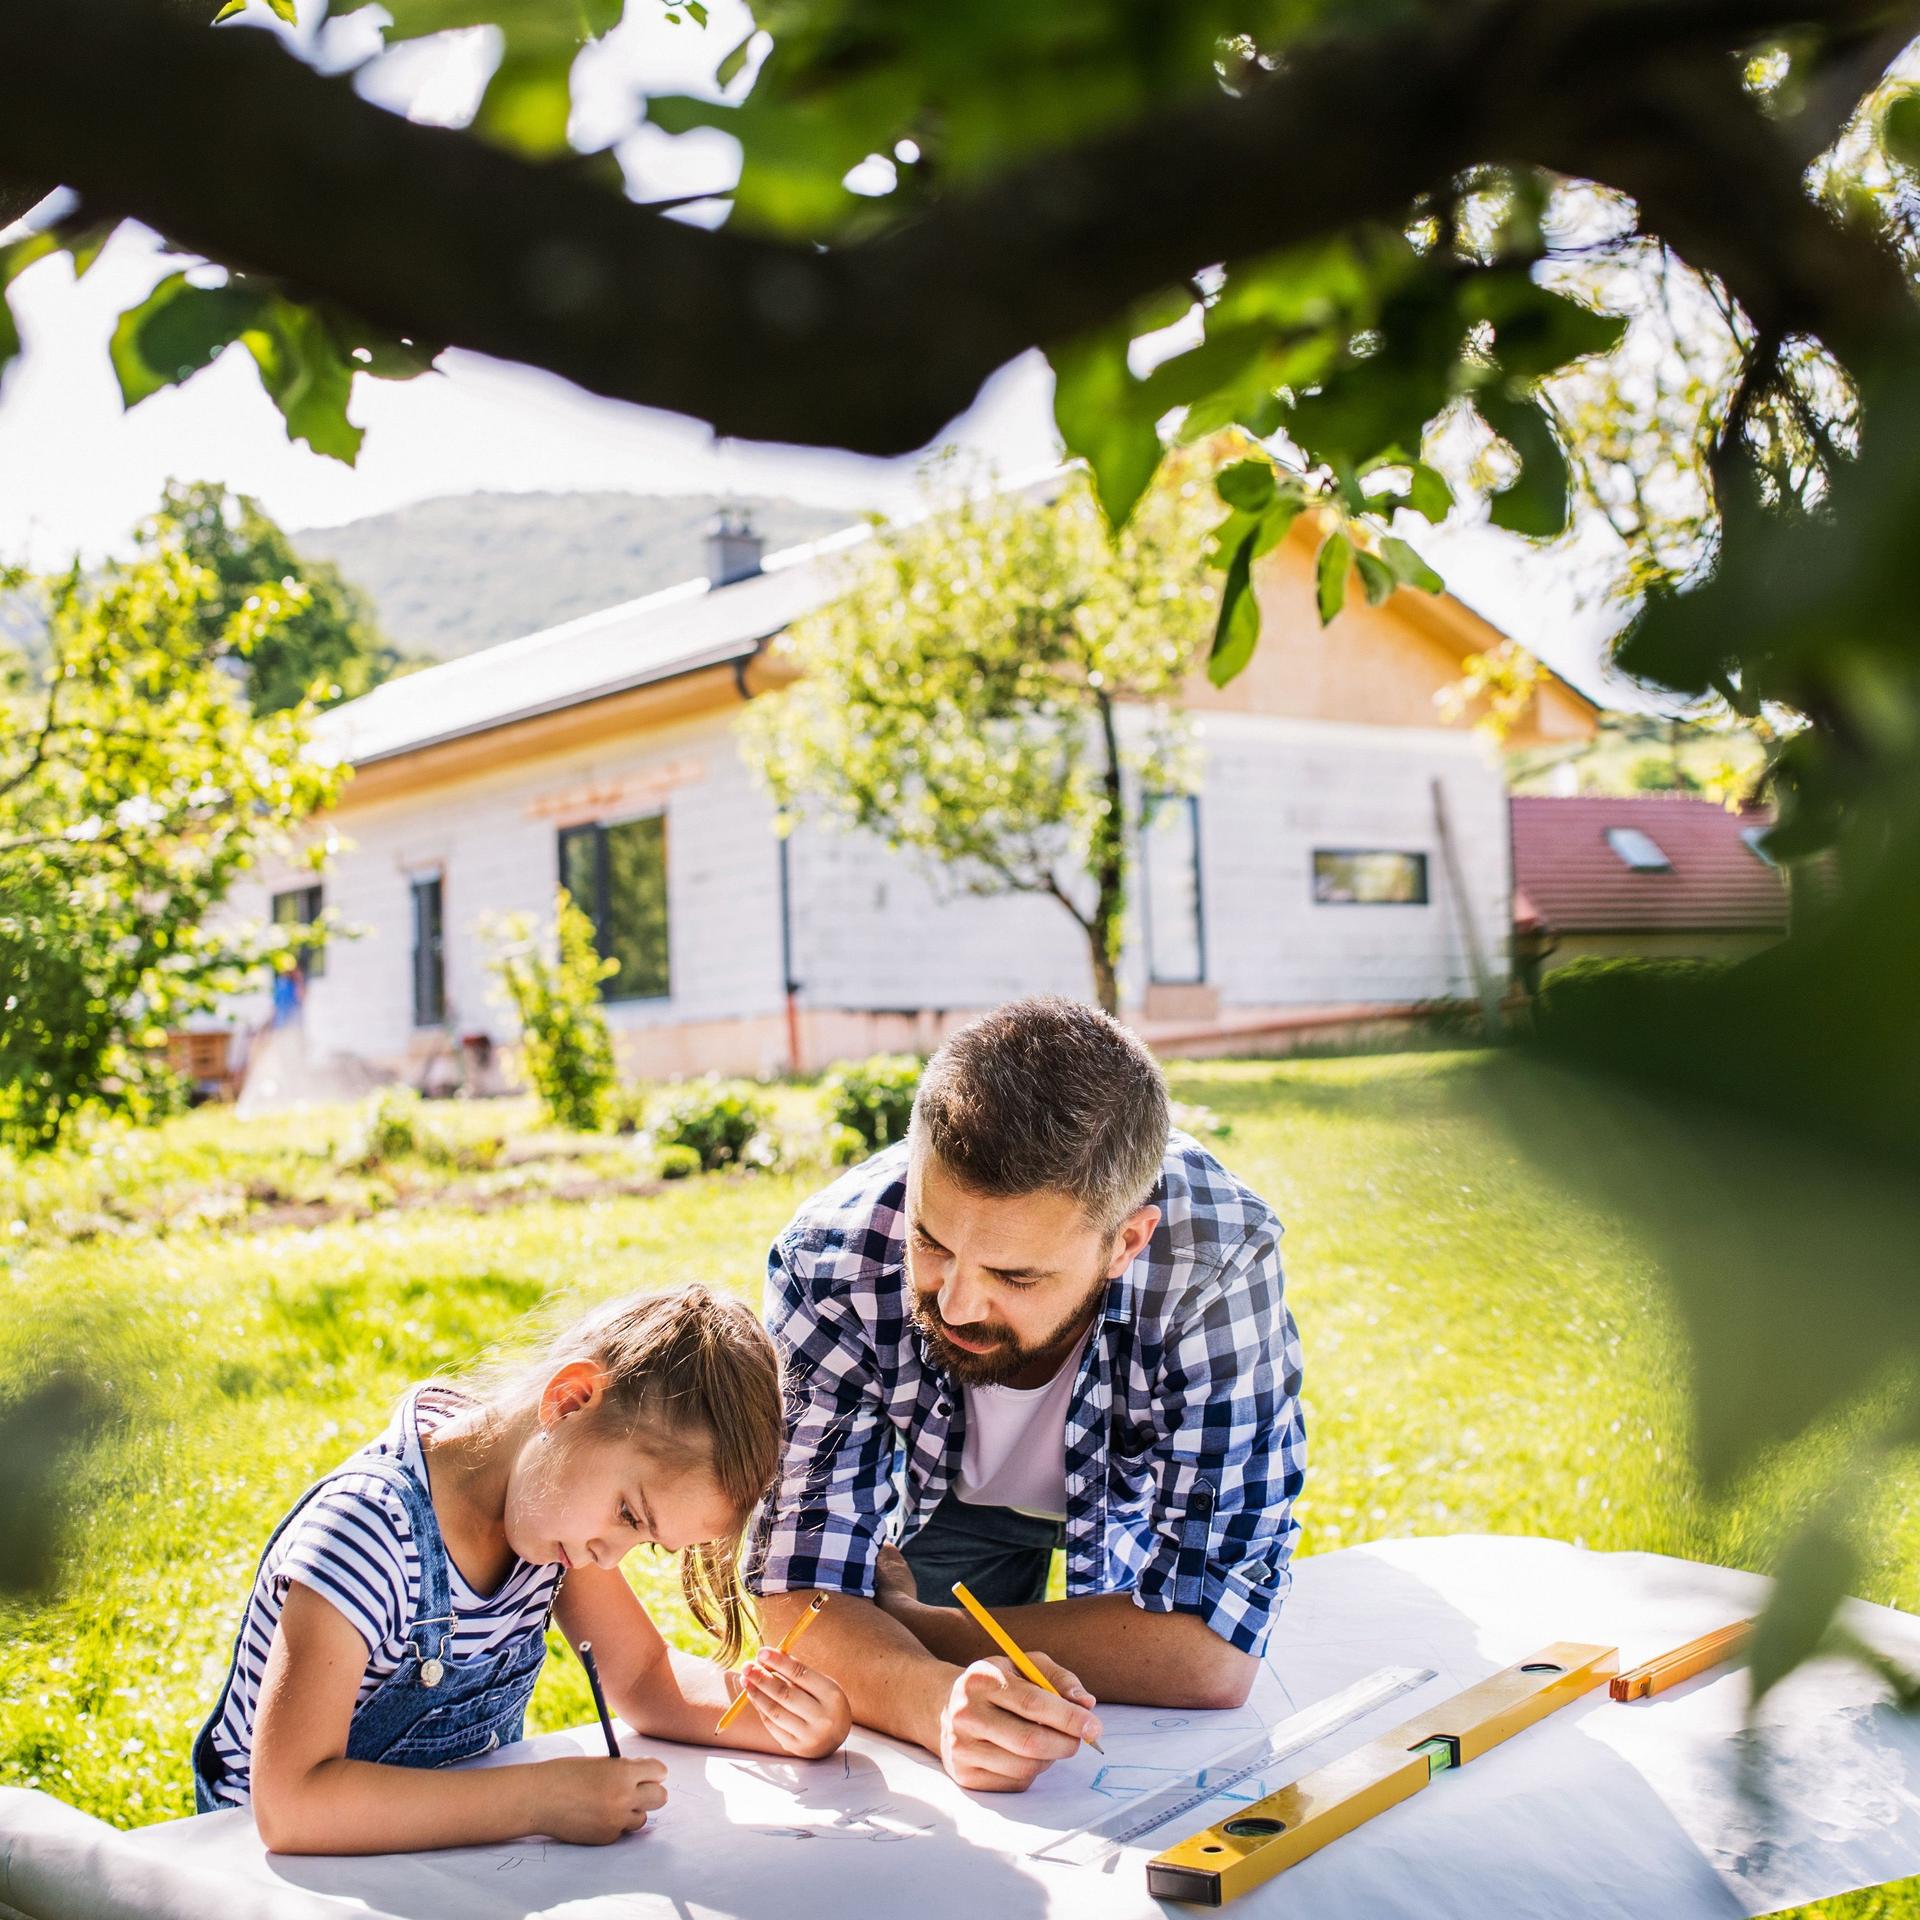 Vater und Tochter planen etwas im Garten mit Stift und Papier. Im Hintergrund steht ein Haus und im Vordergrund ein Baum.